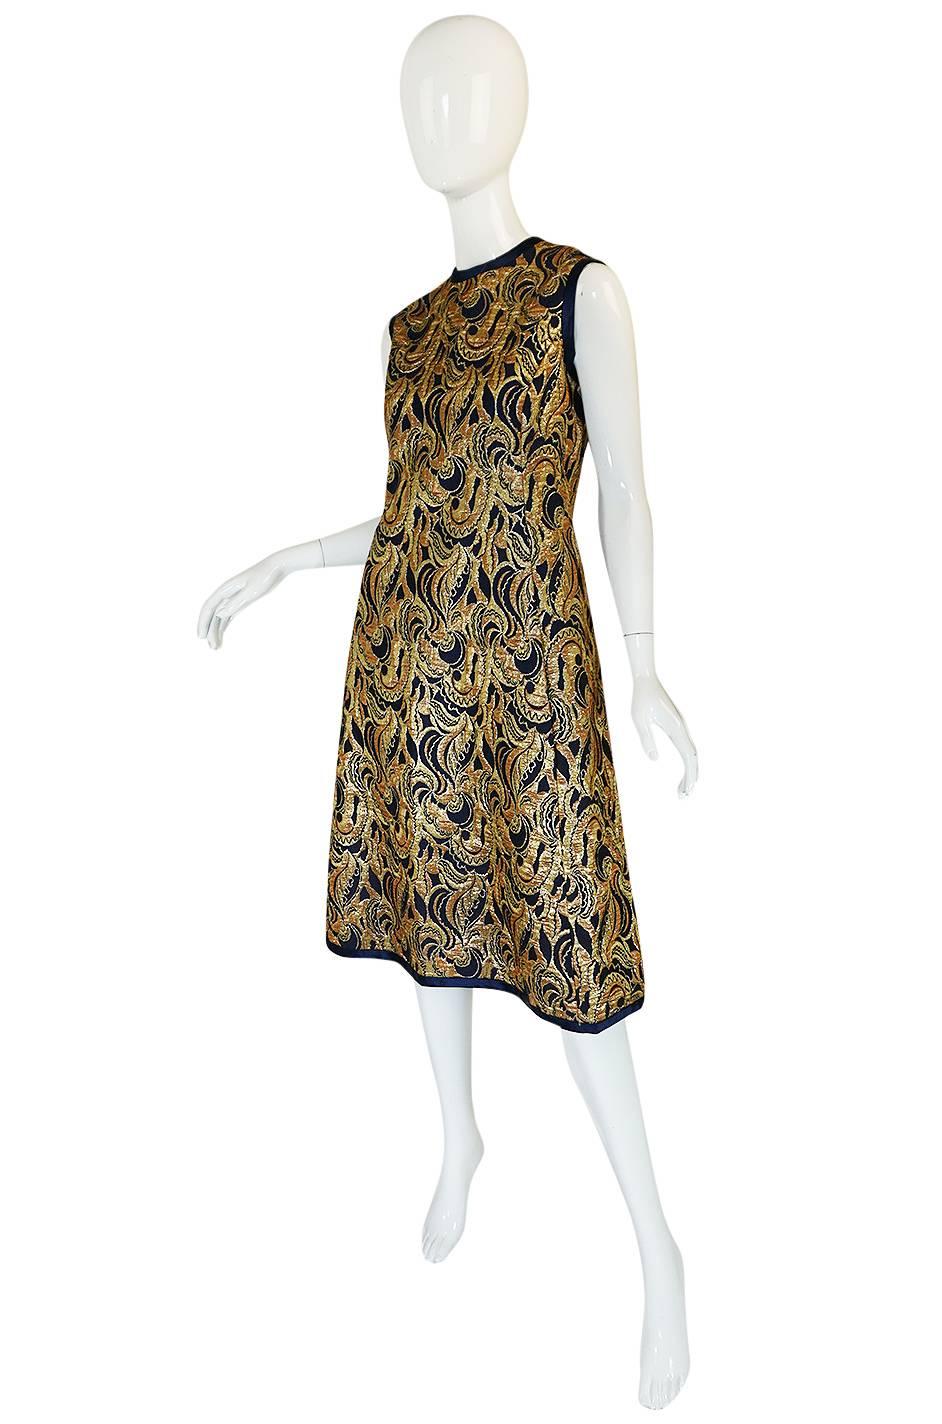 Women's 1960s Metallic Gold & Blue Malcolm Starr Dress & Jacket